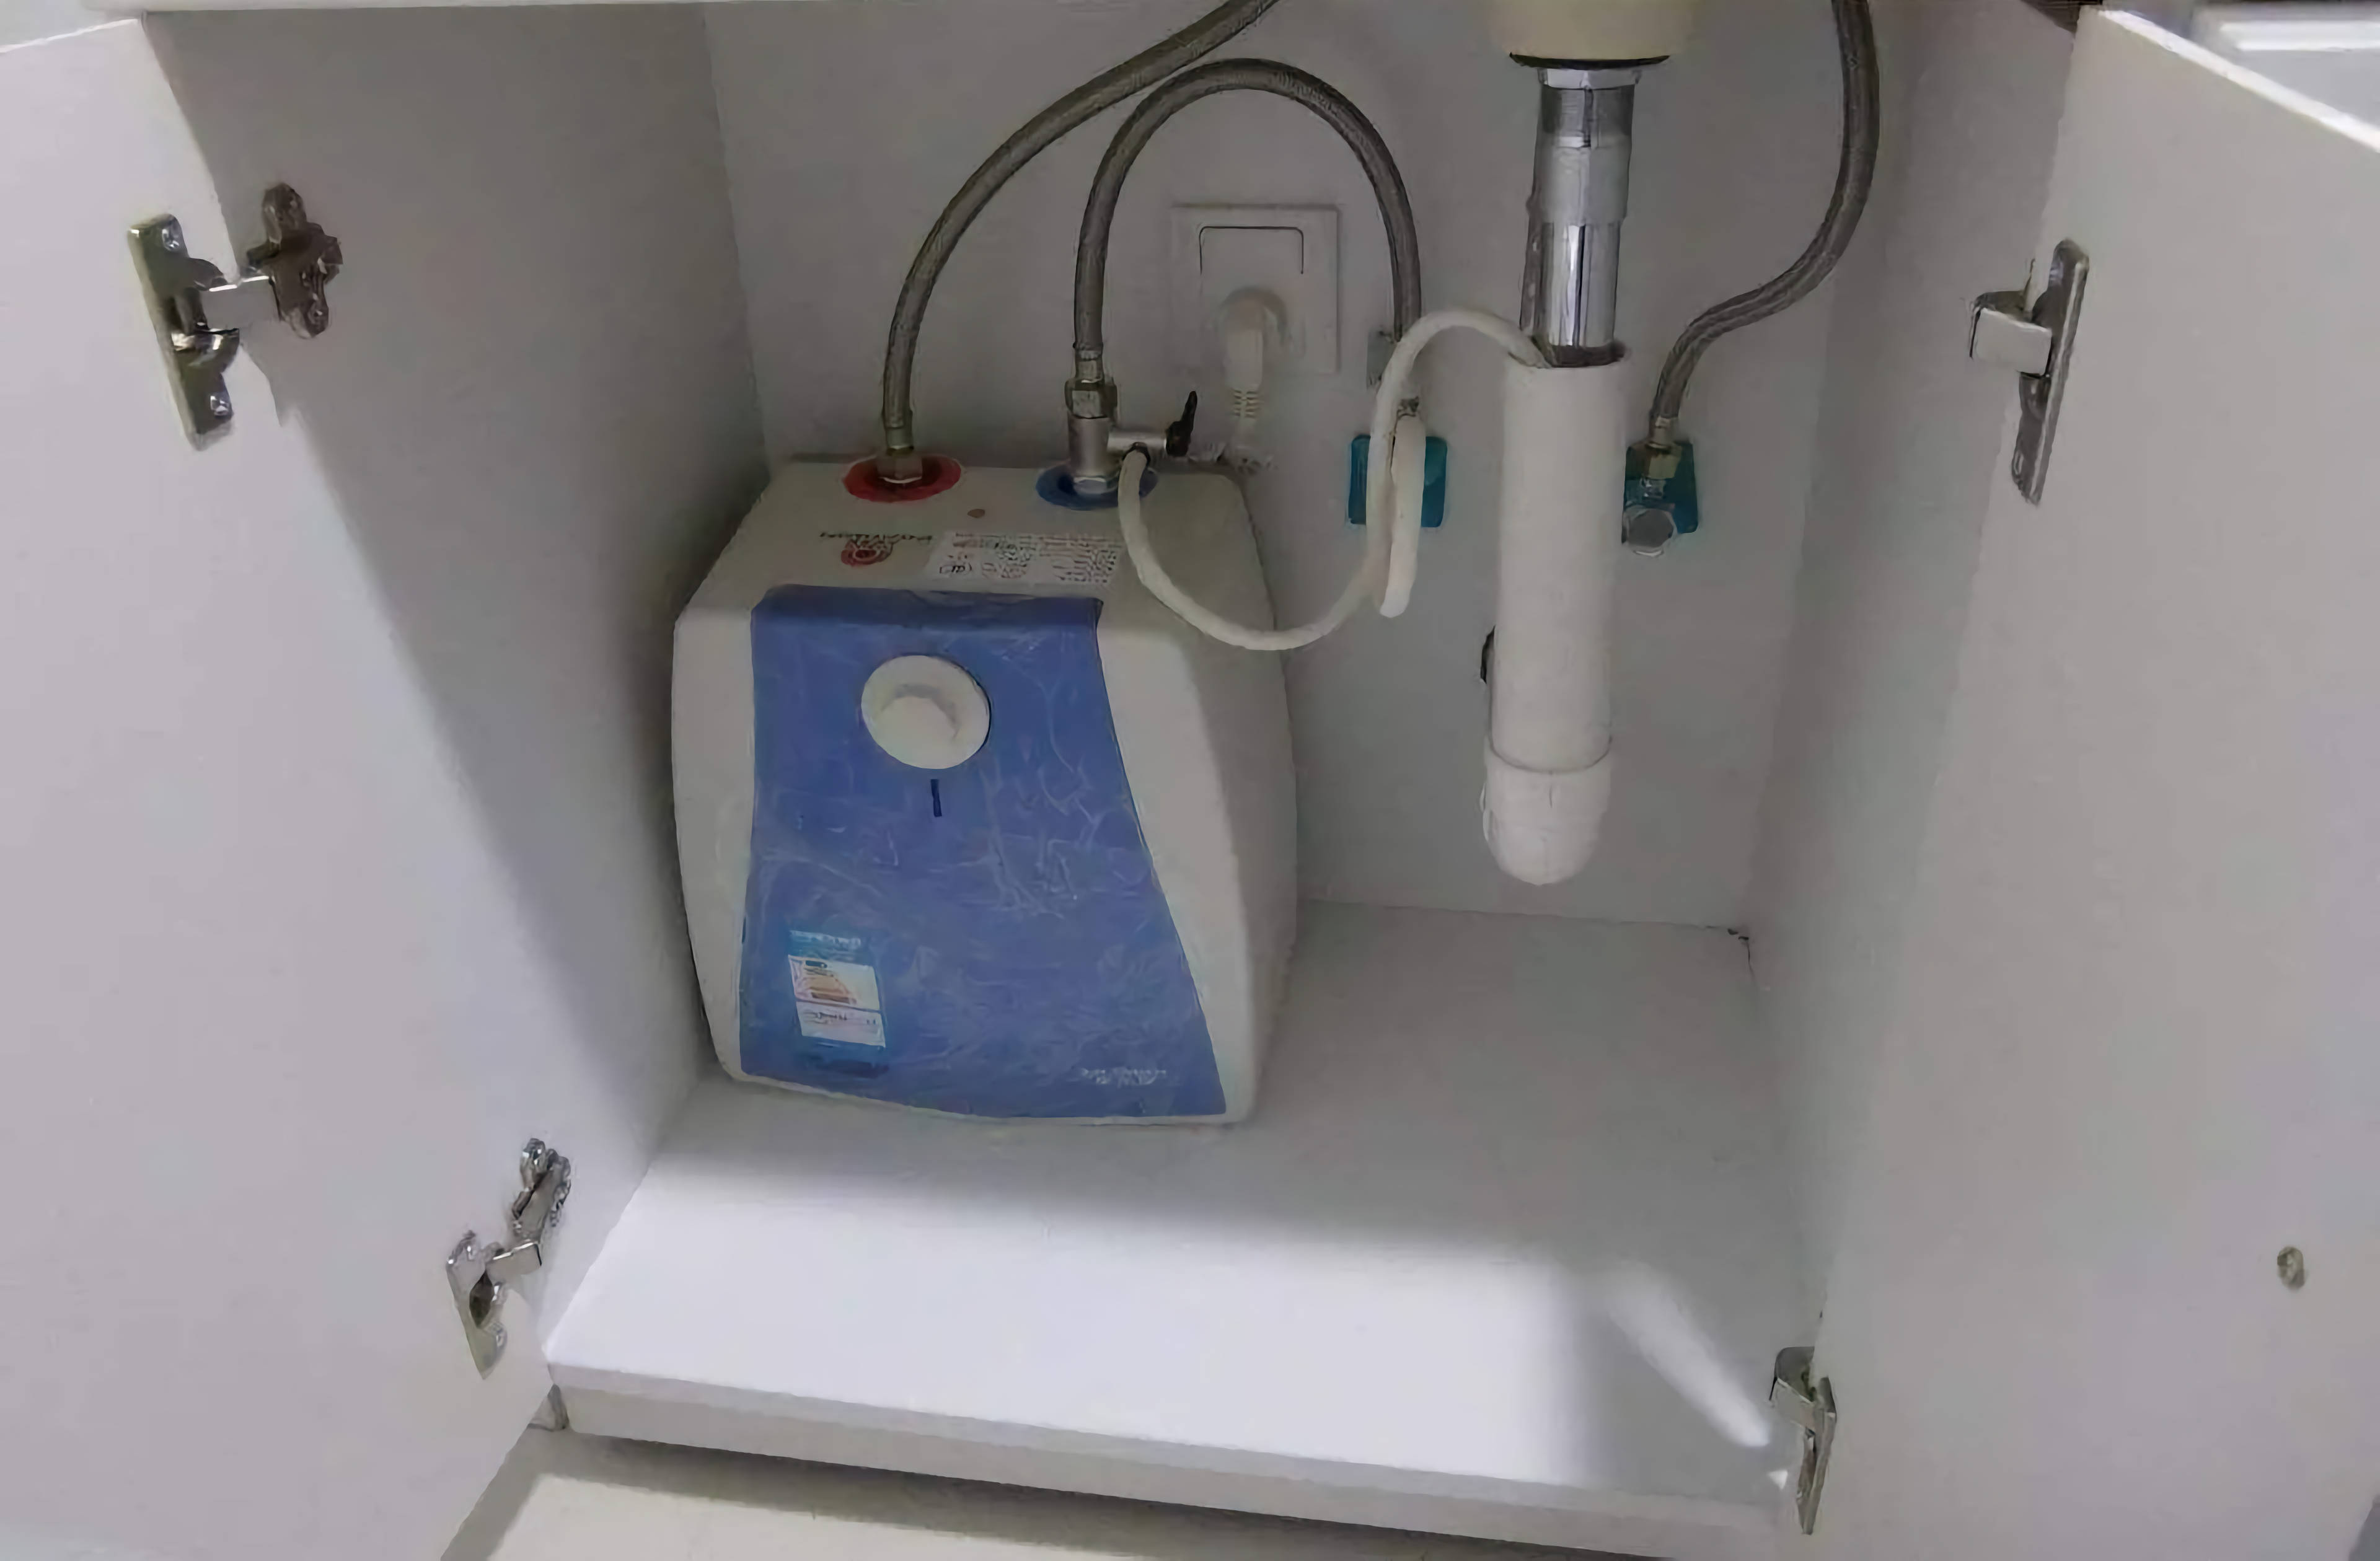 考虑在厨房安装净水器,同样一般是装在水槽下面的,可能也需要预留插座